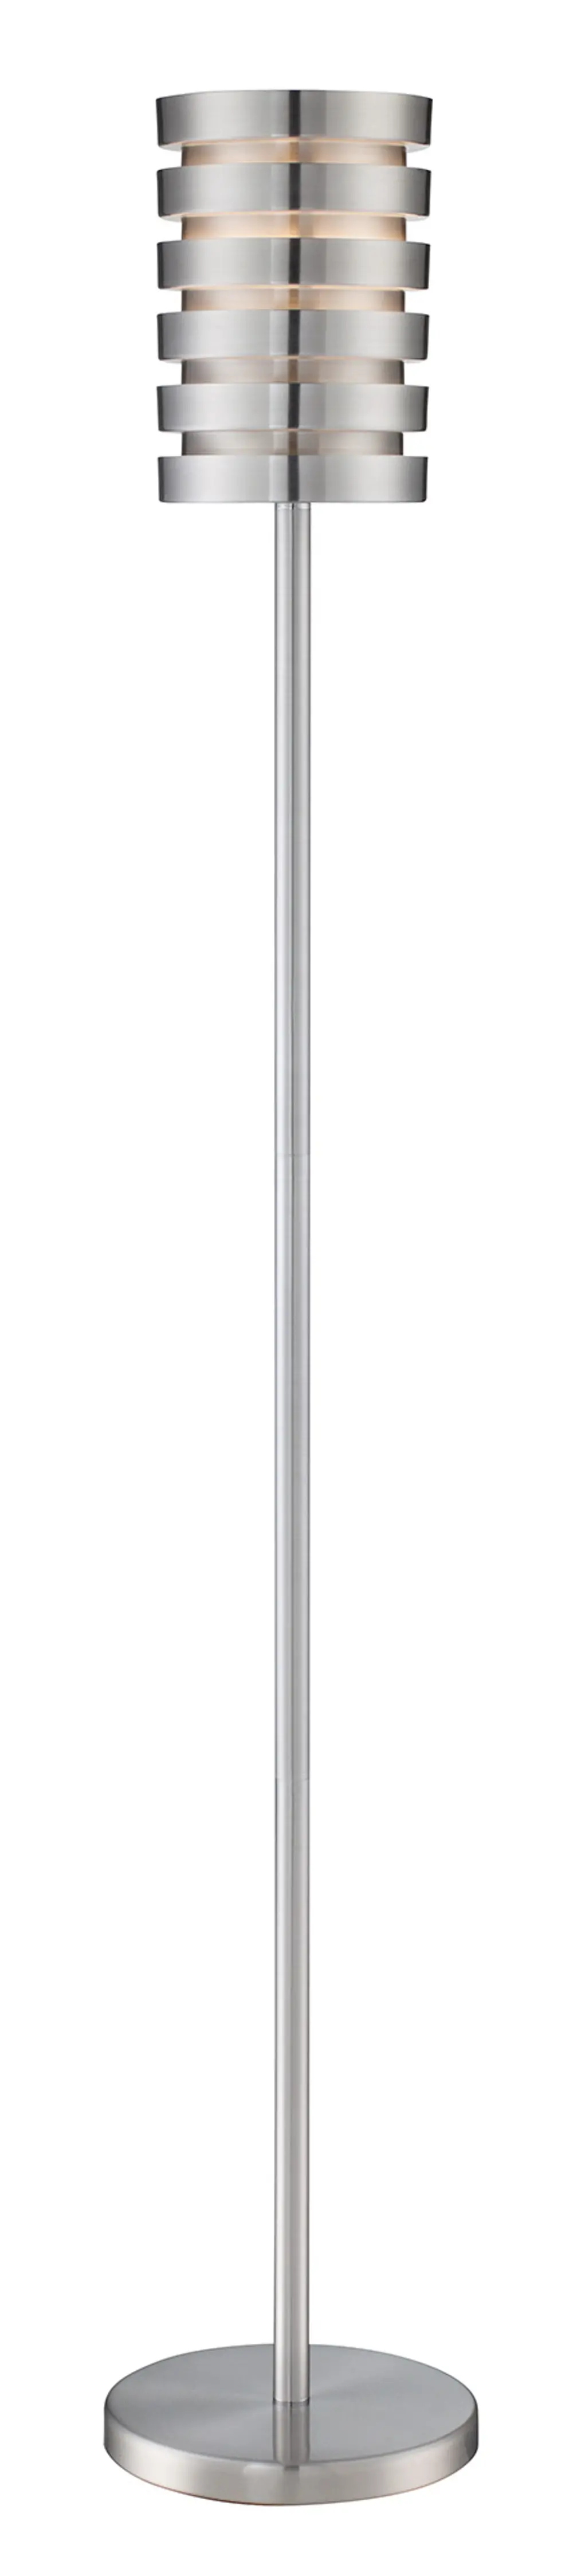 Aluminum Slat Floor Lamp - Tendrill II-1